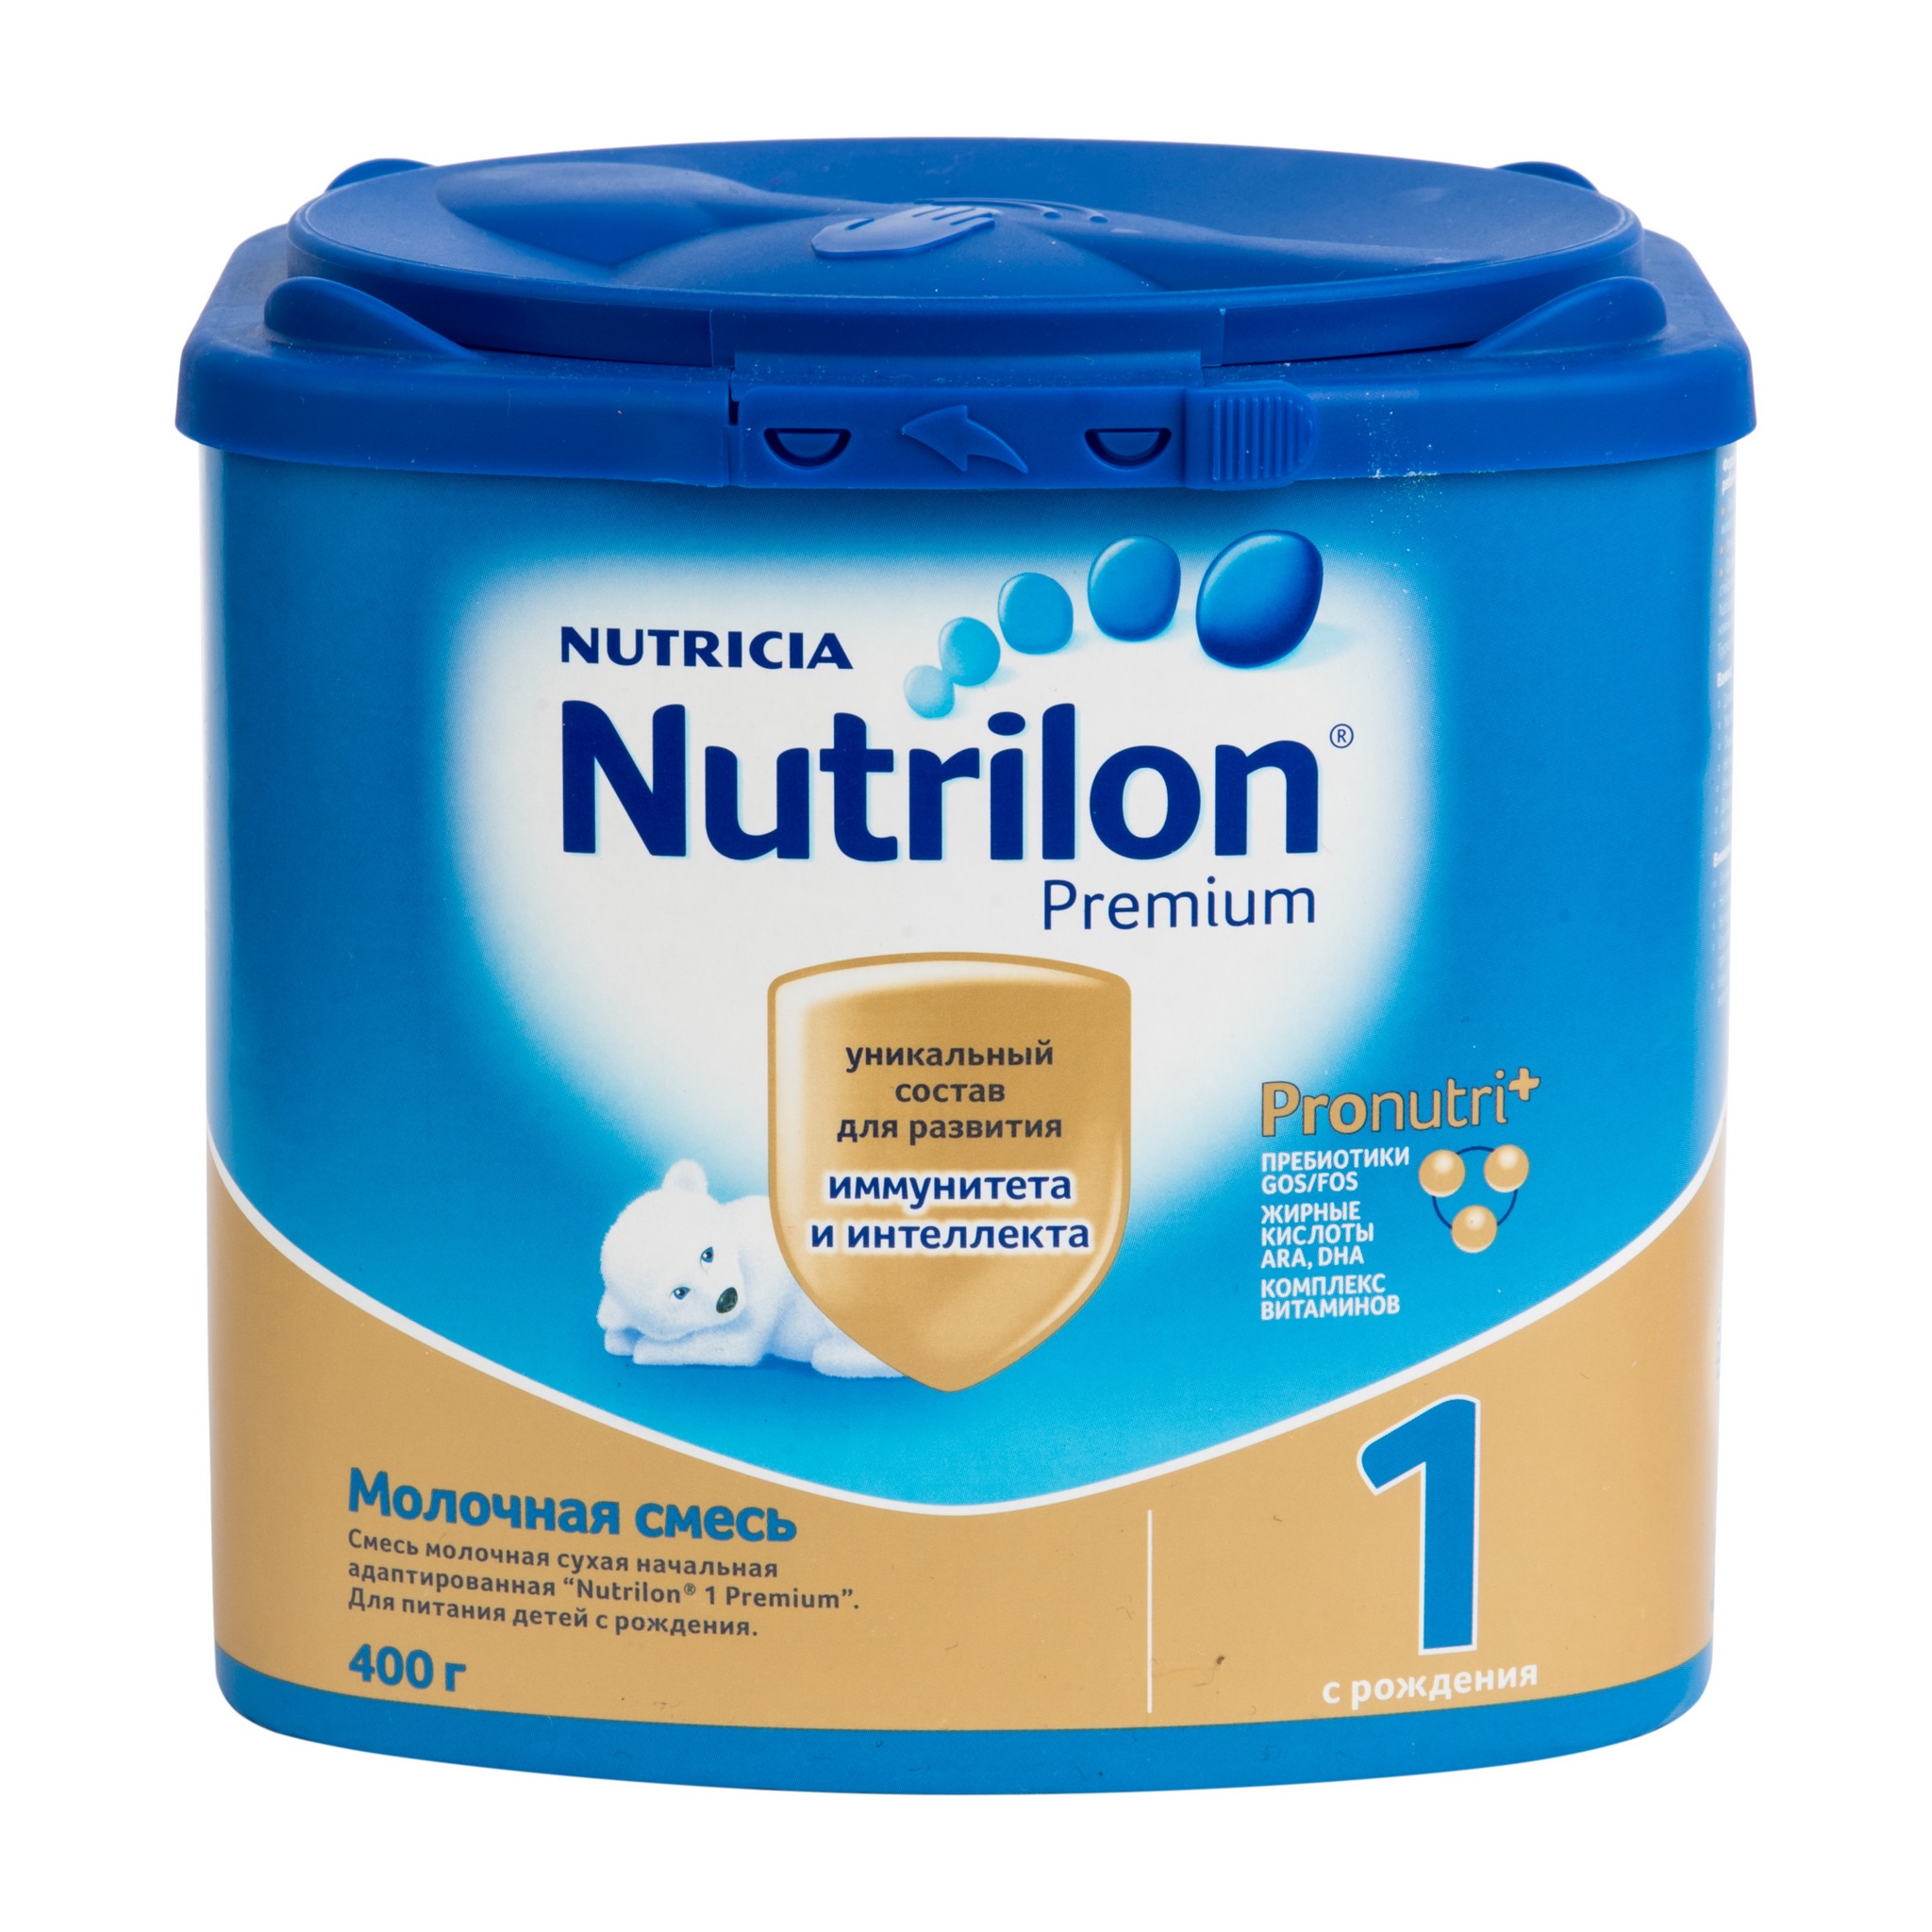 Сухая молочная смесь Nutrilon premium 1 Premium - рейтинг 3,64 по отзывам  экспертов ☑ Экспертиза состава и производителя | Роскачество